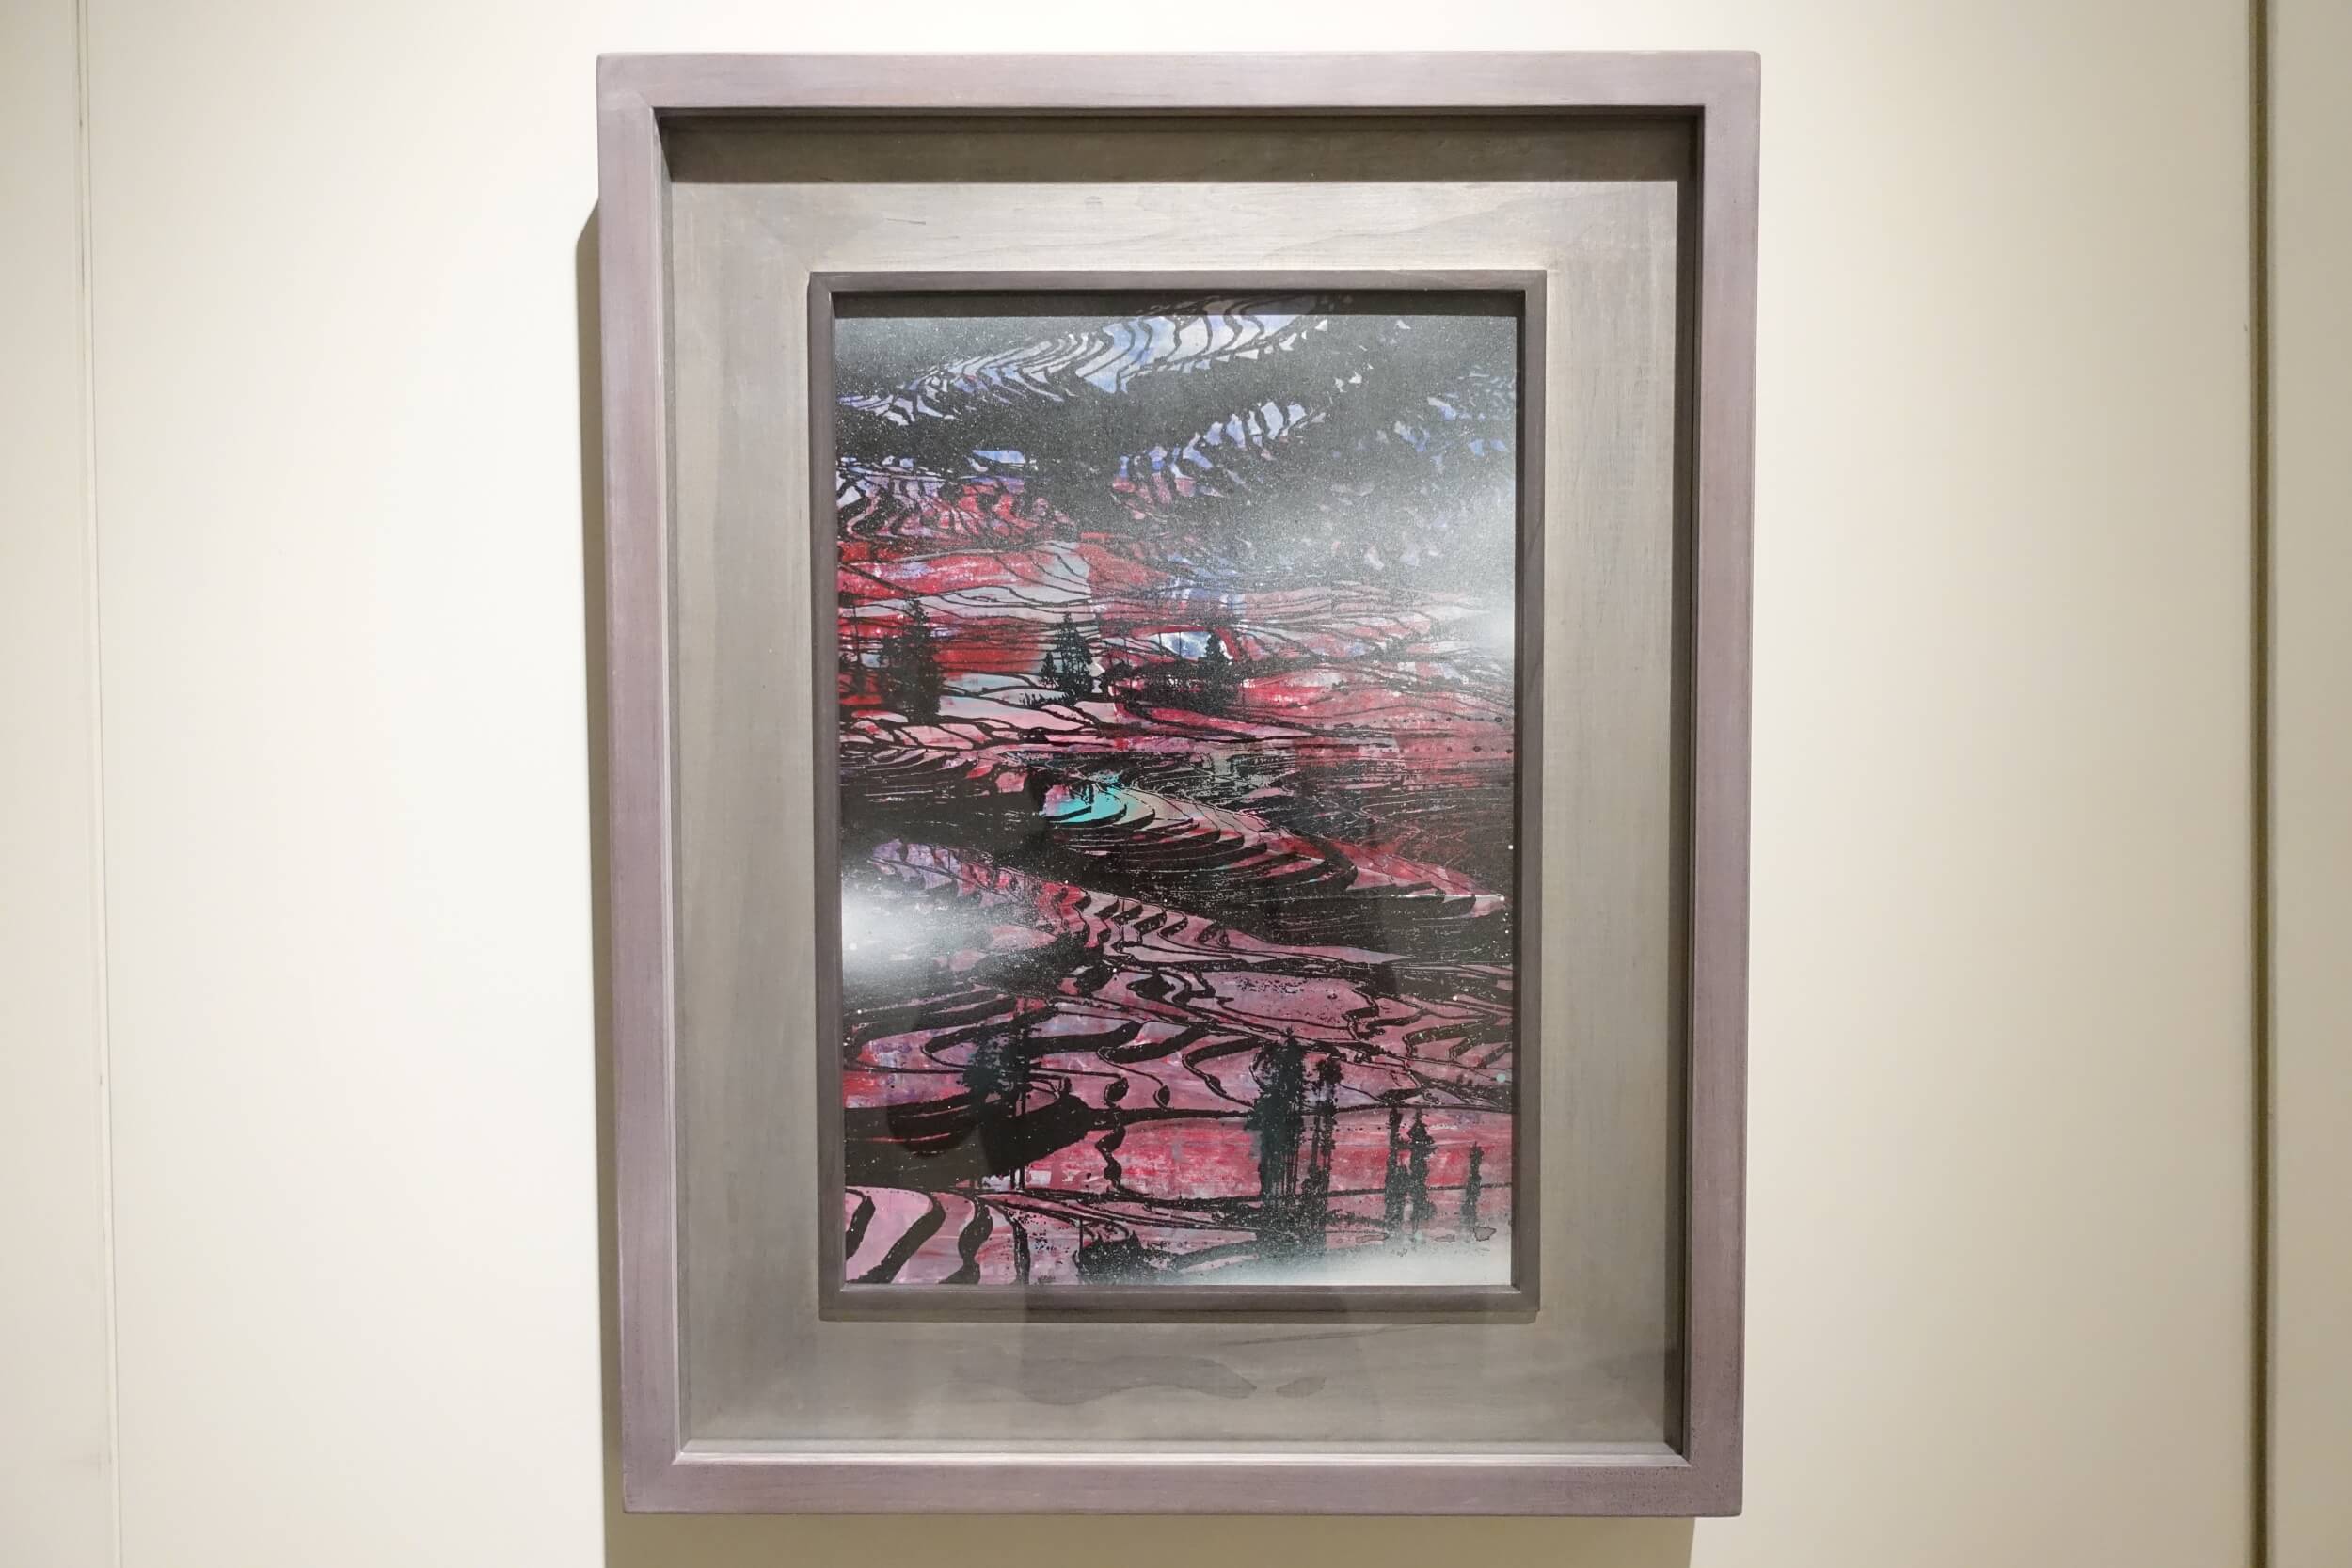 〈田園交響系列3〉，複合媒材、畫布，2020，40 x 27 cm。圖 / 非池中藝術網拍攝